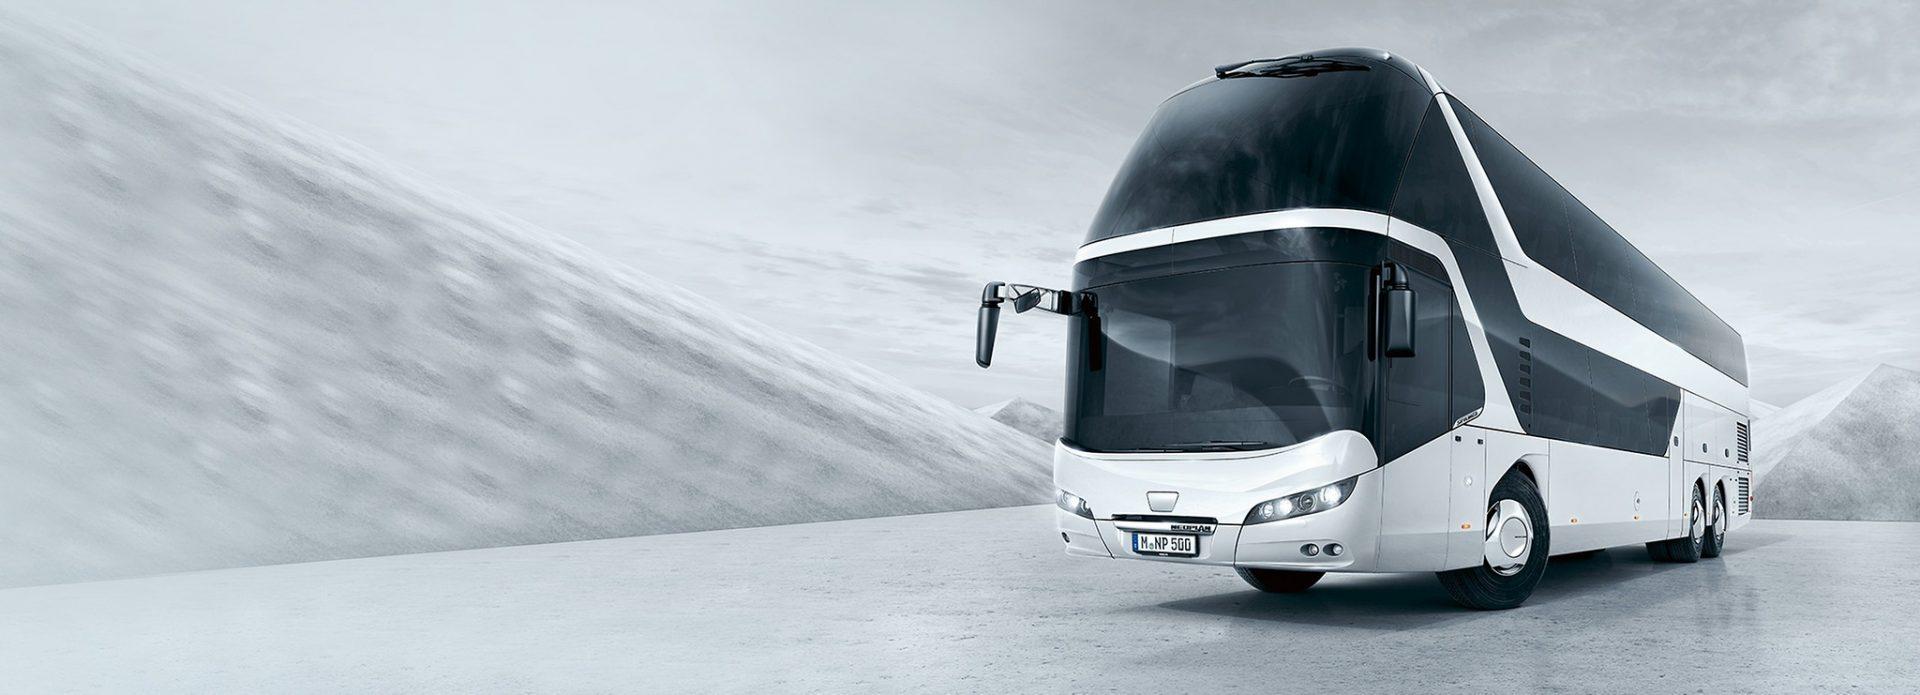 NEOPLAN Skyliner - Двоповерховий автобус класу люкс для яскравих вражень від поїздки